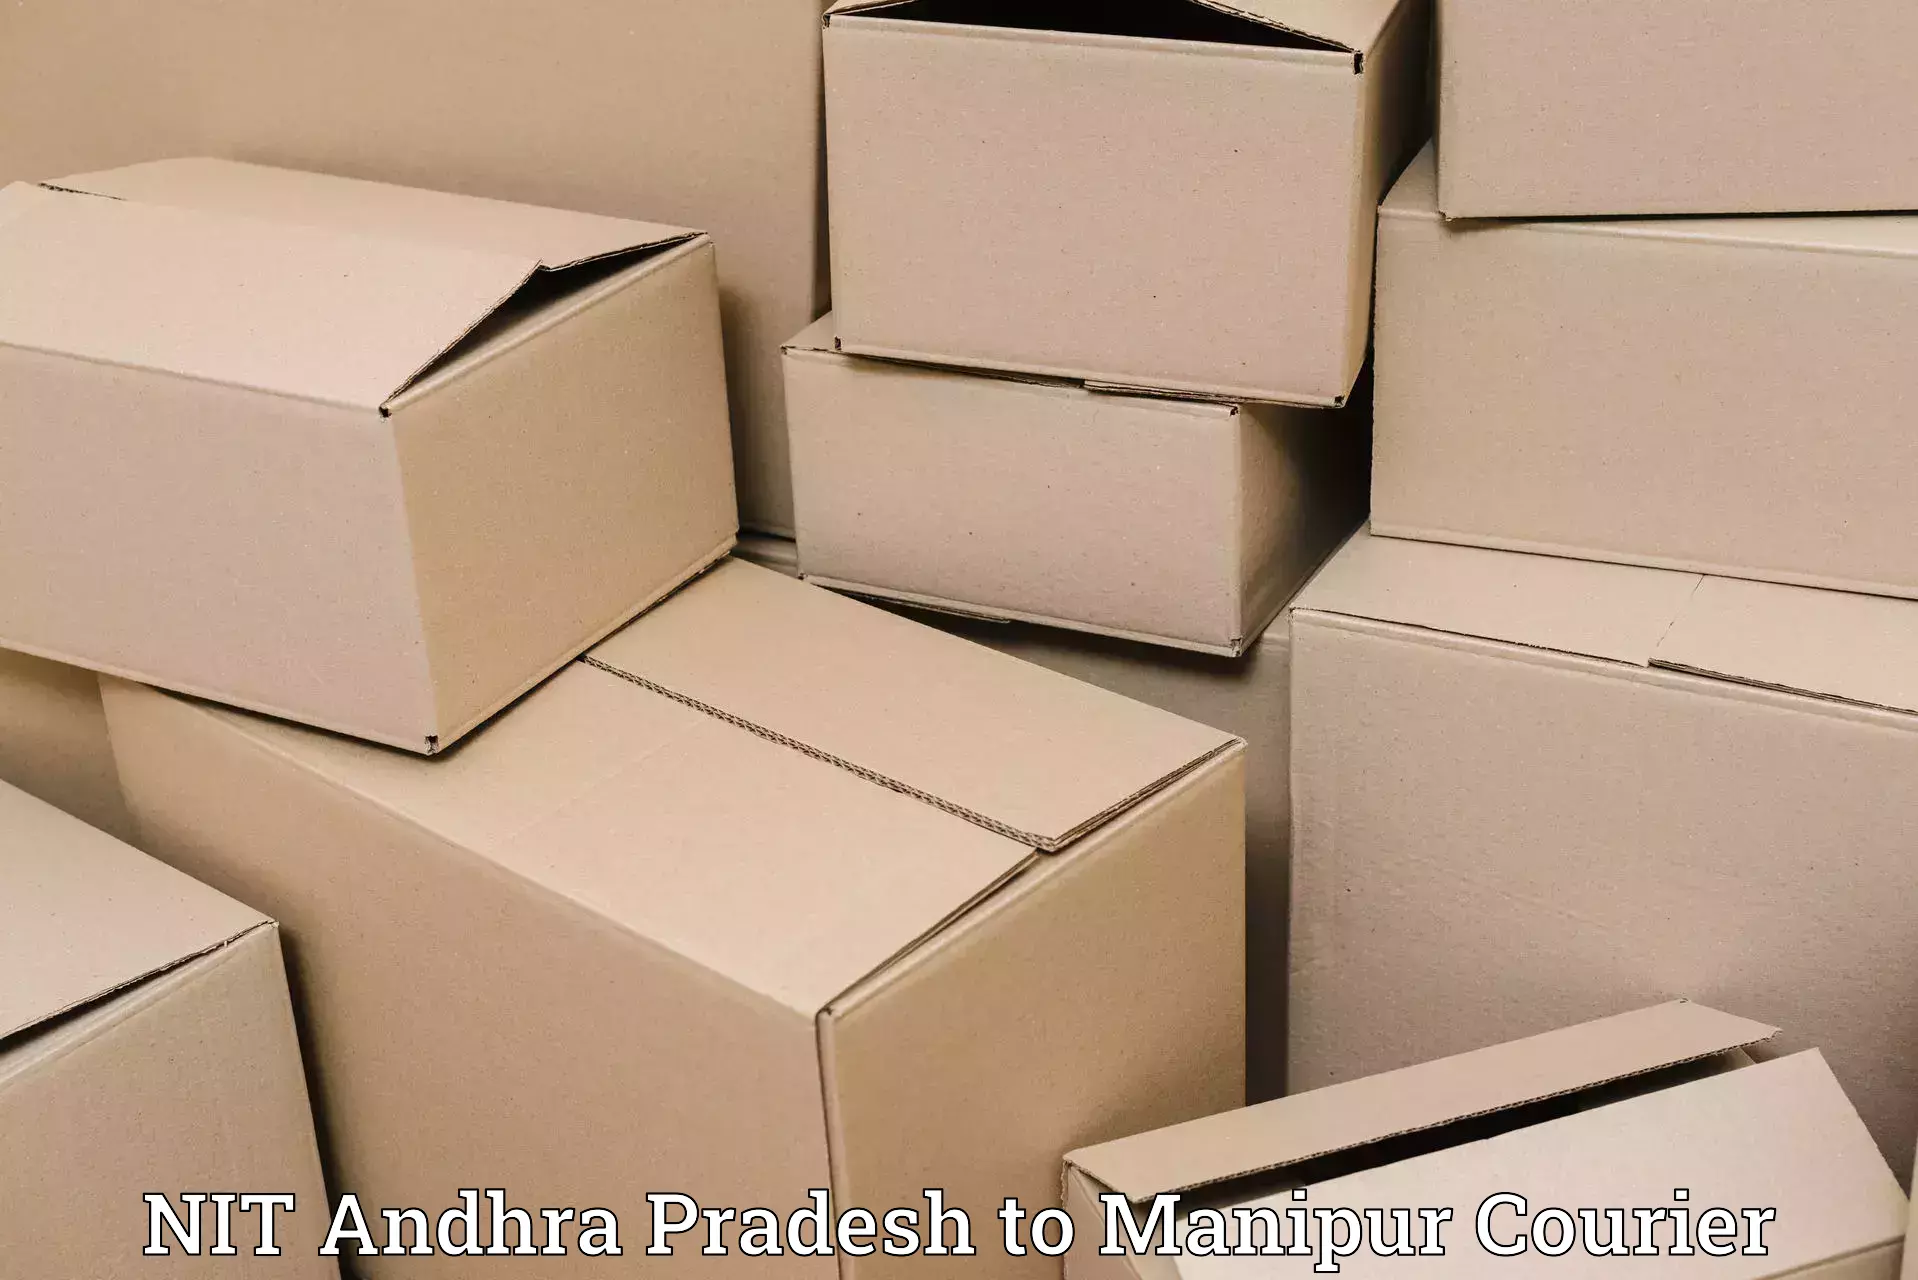 Express logistics service NIT Andhra Pradesh to Tamenglong